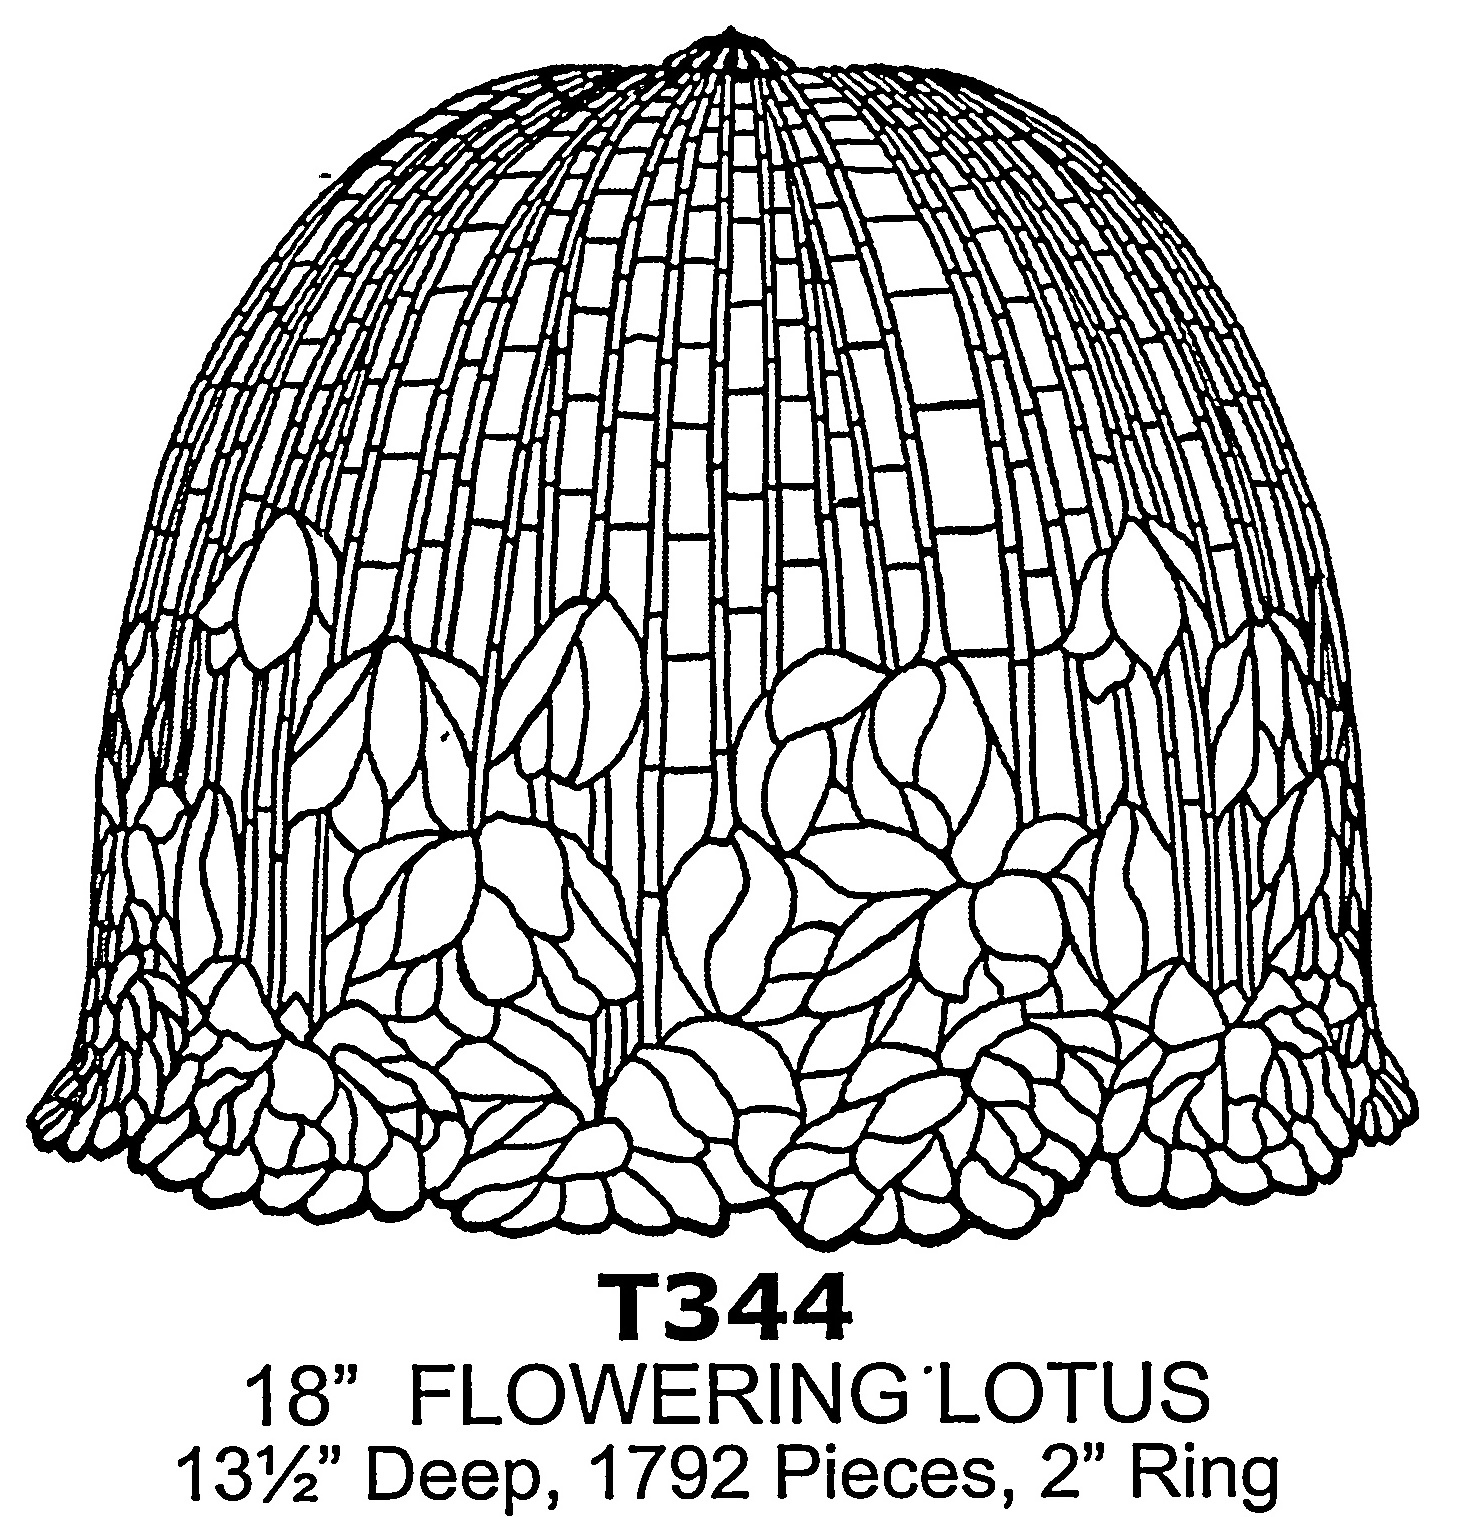 18" Flowering Lotus